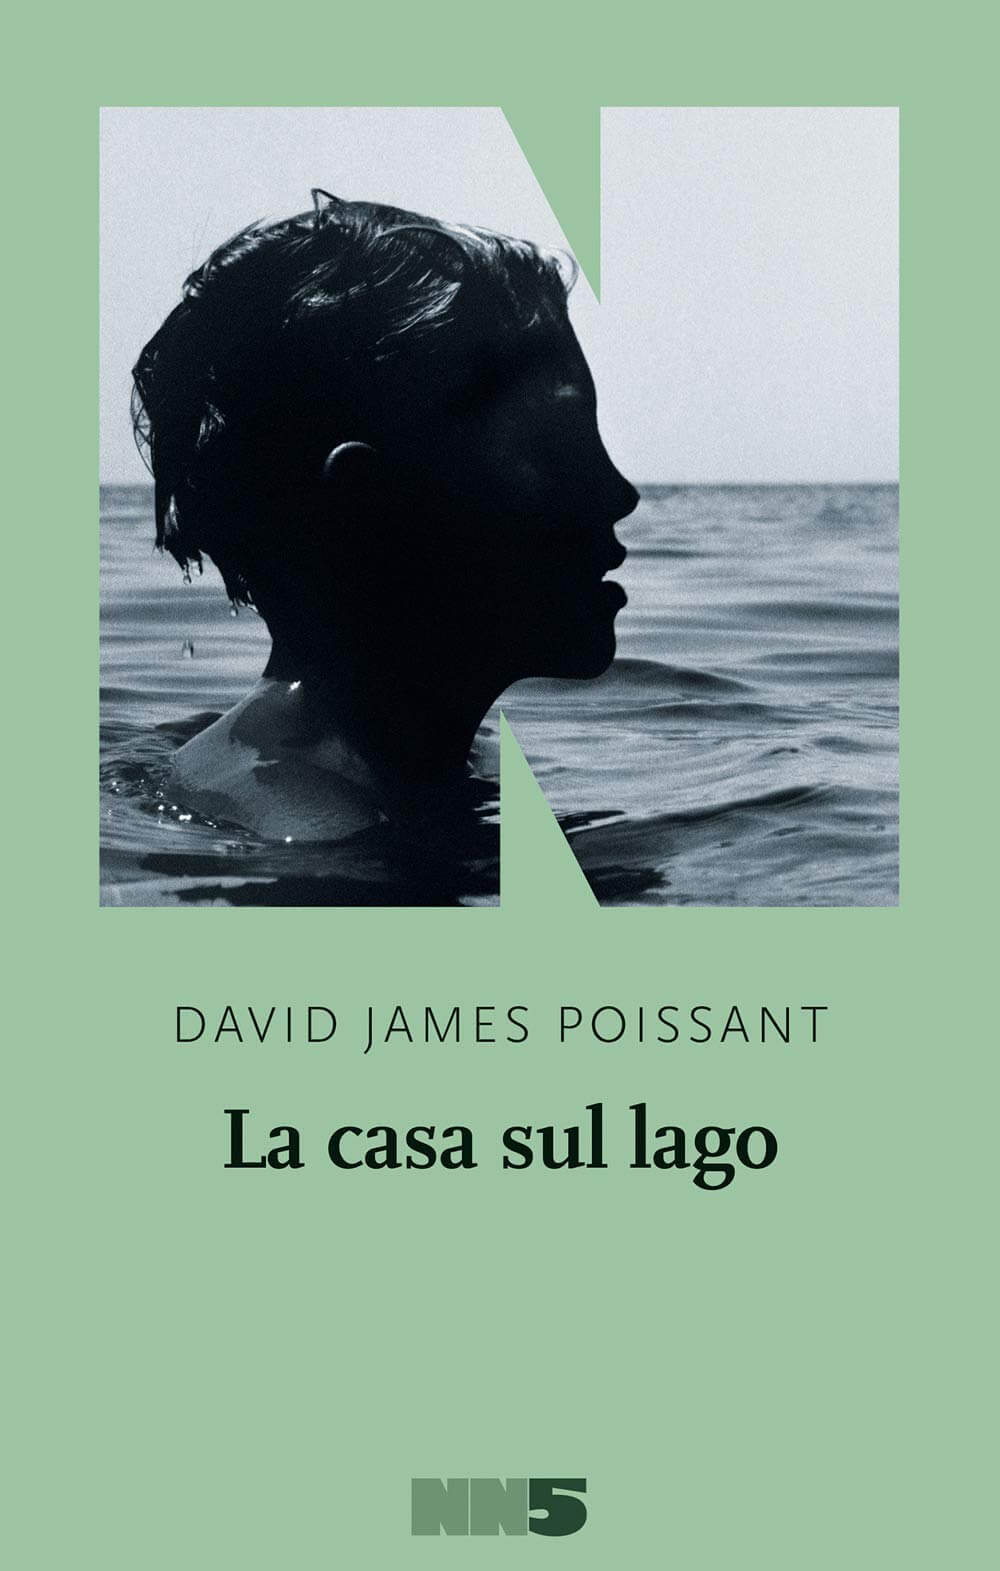 "La casa sul lago" di David James Poissant: vita di coppia oltre i 'problemi gay' - la casa sul lago - Gay.it